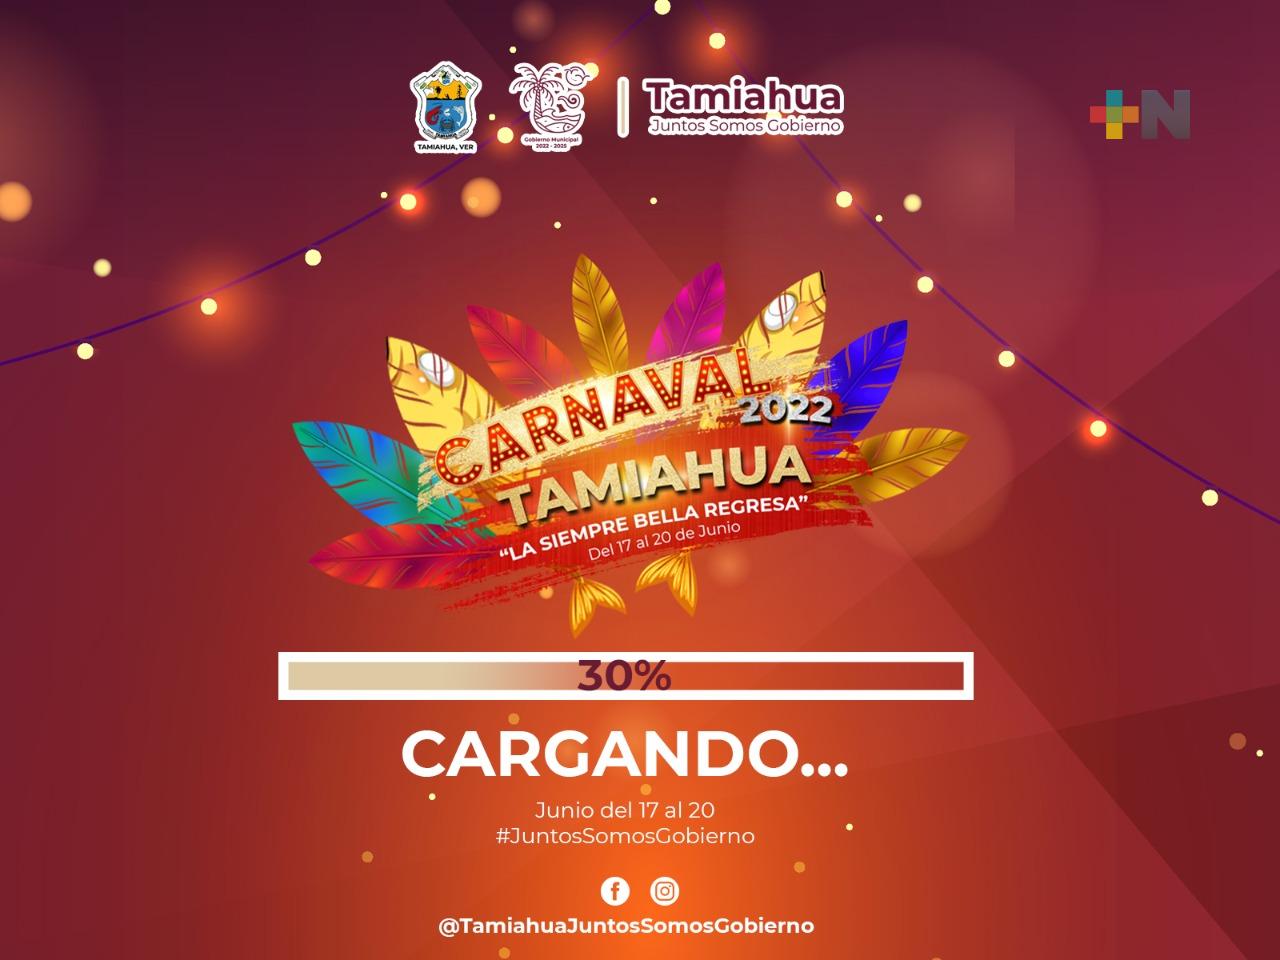 Vuelve Carnaval de Tamiahua “La Siempre Bella Regresa”